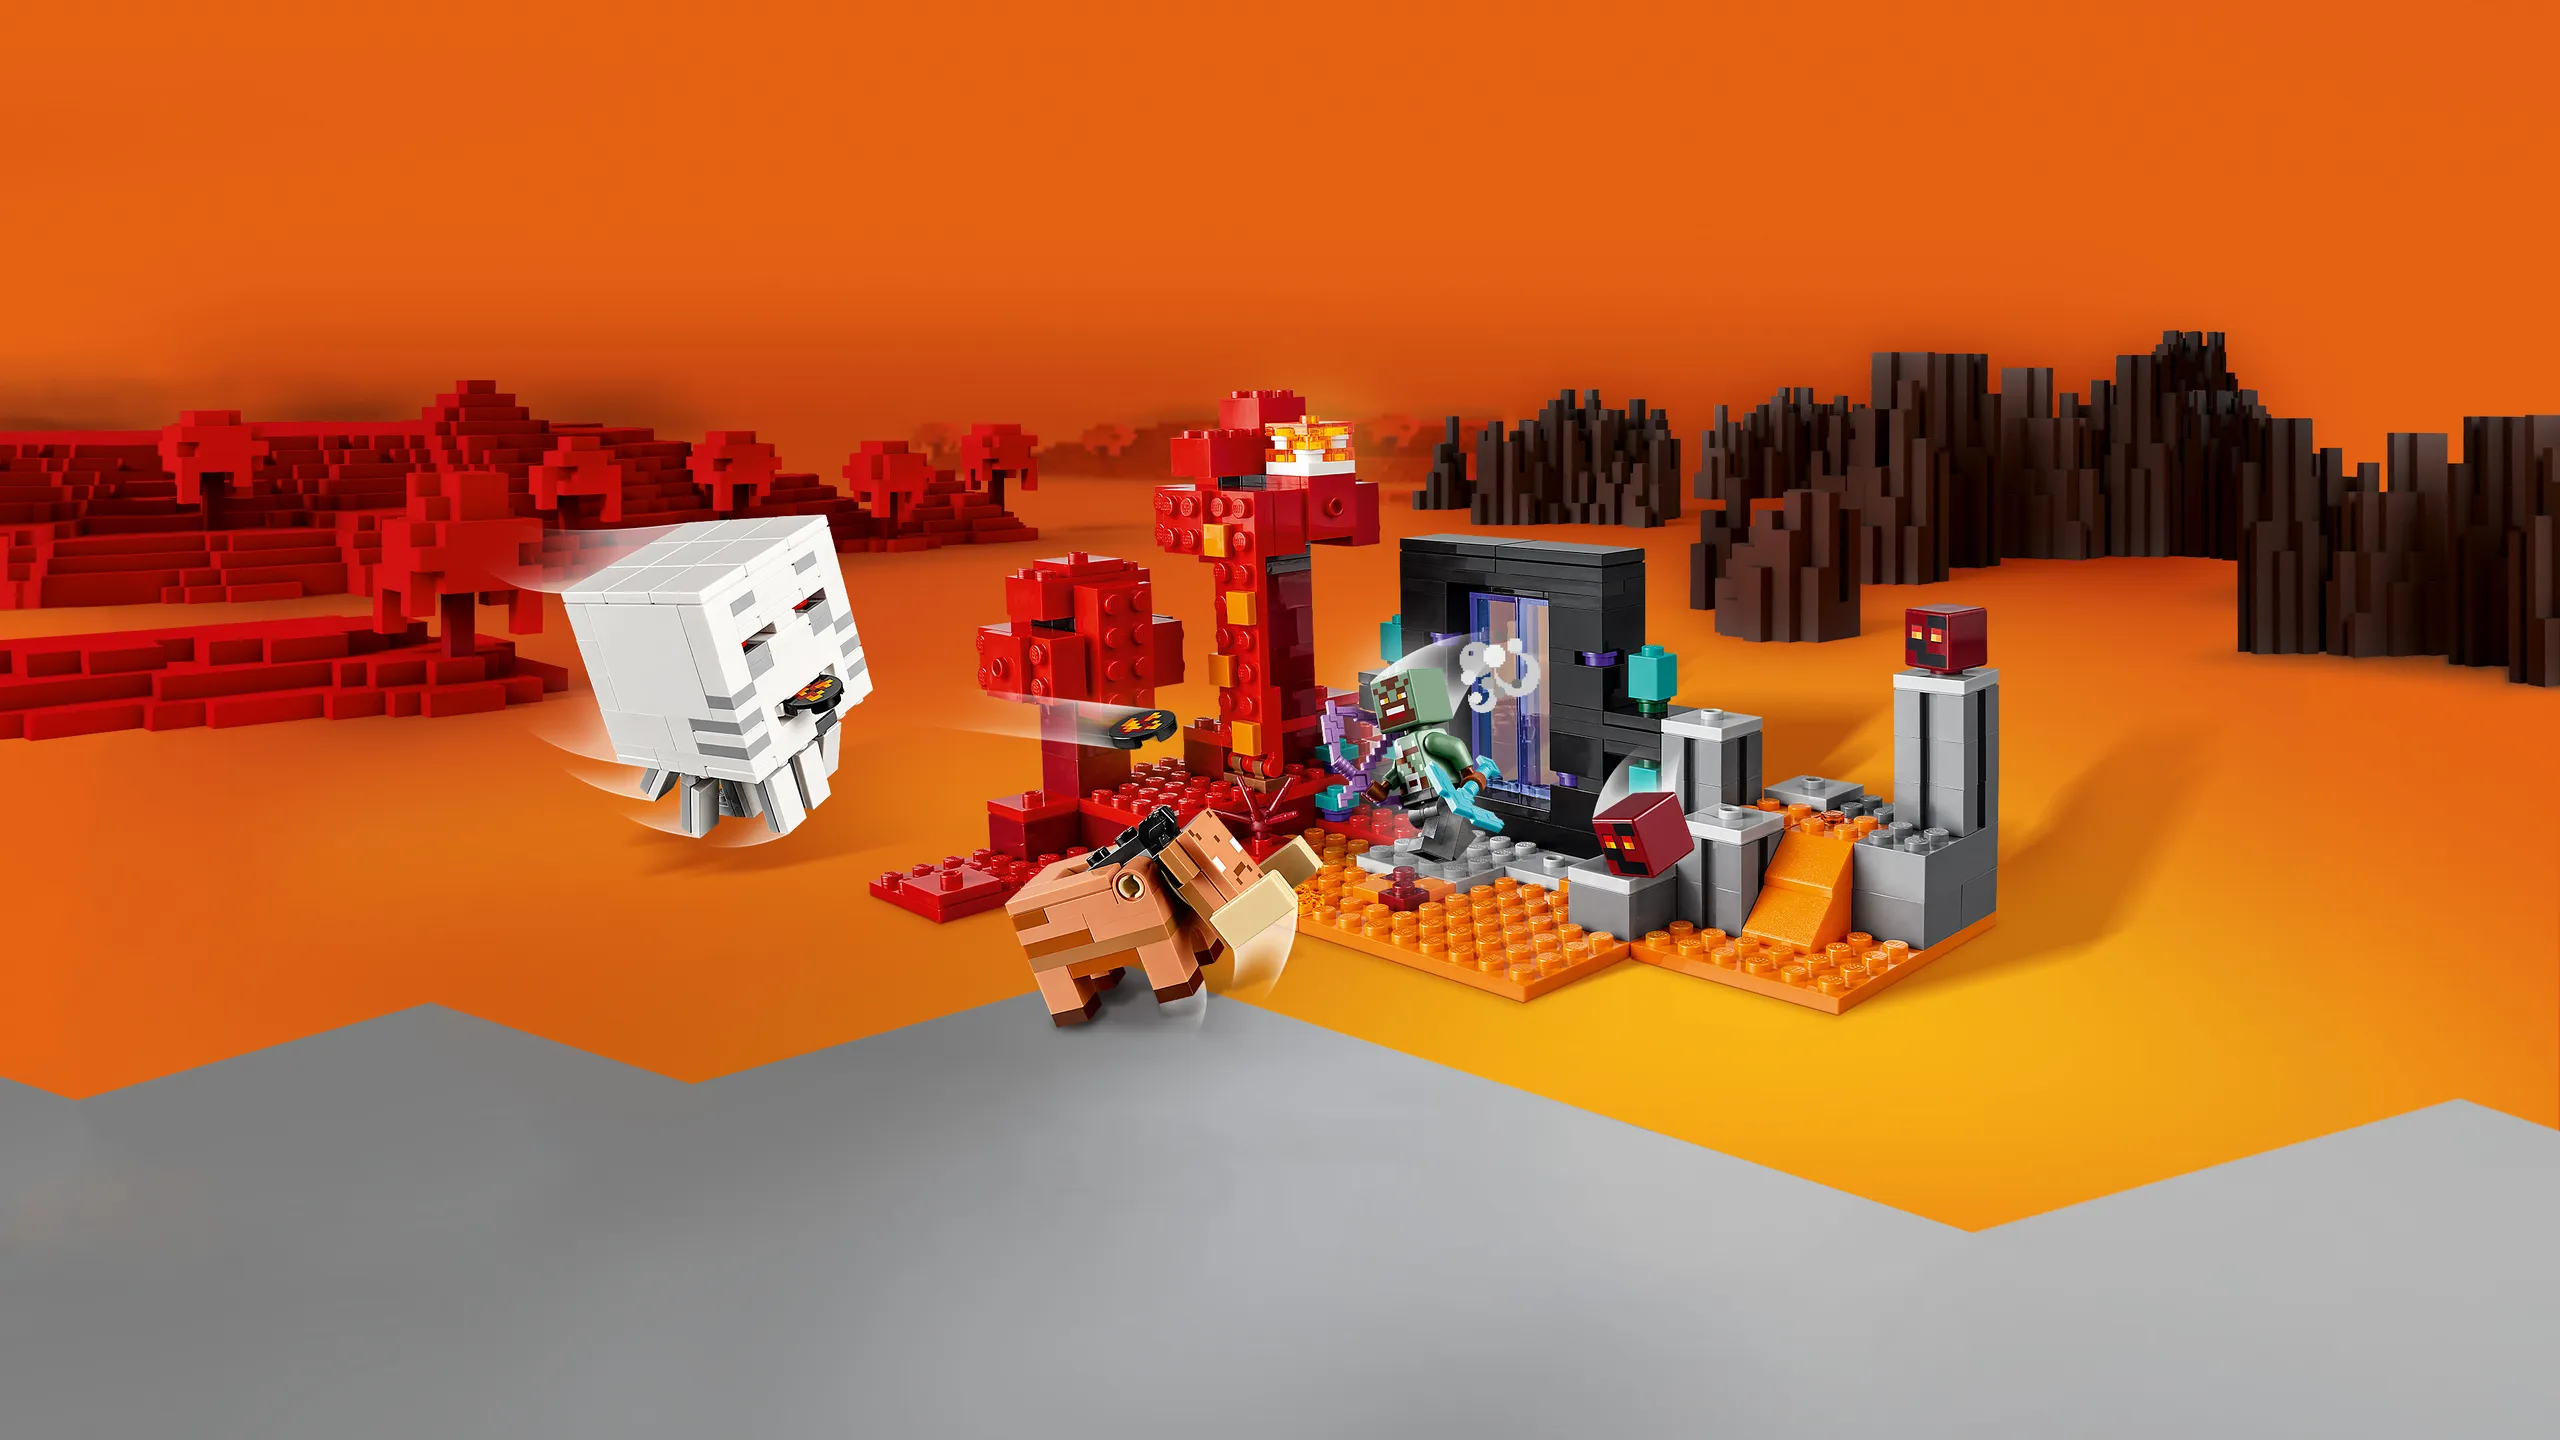 Jeux de construction Lego Minecraft - Underground castle